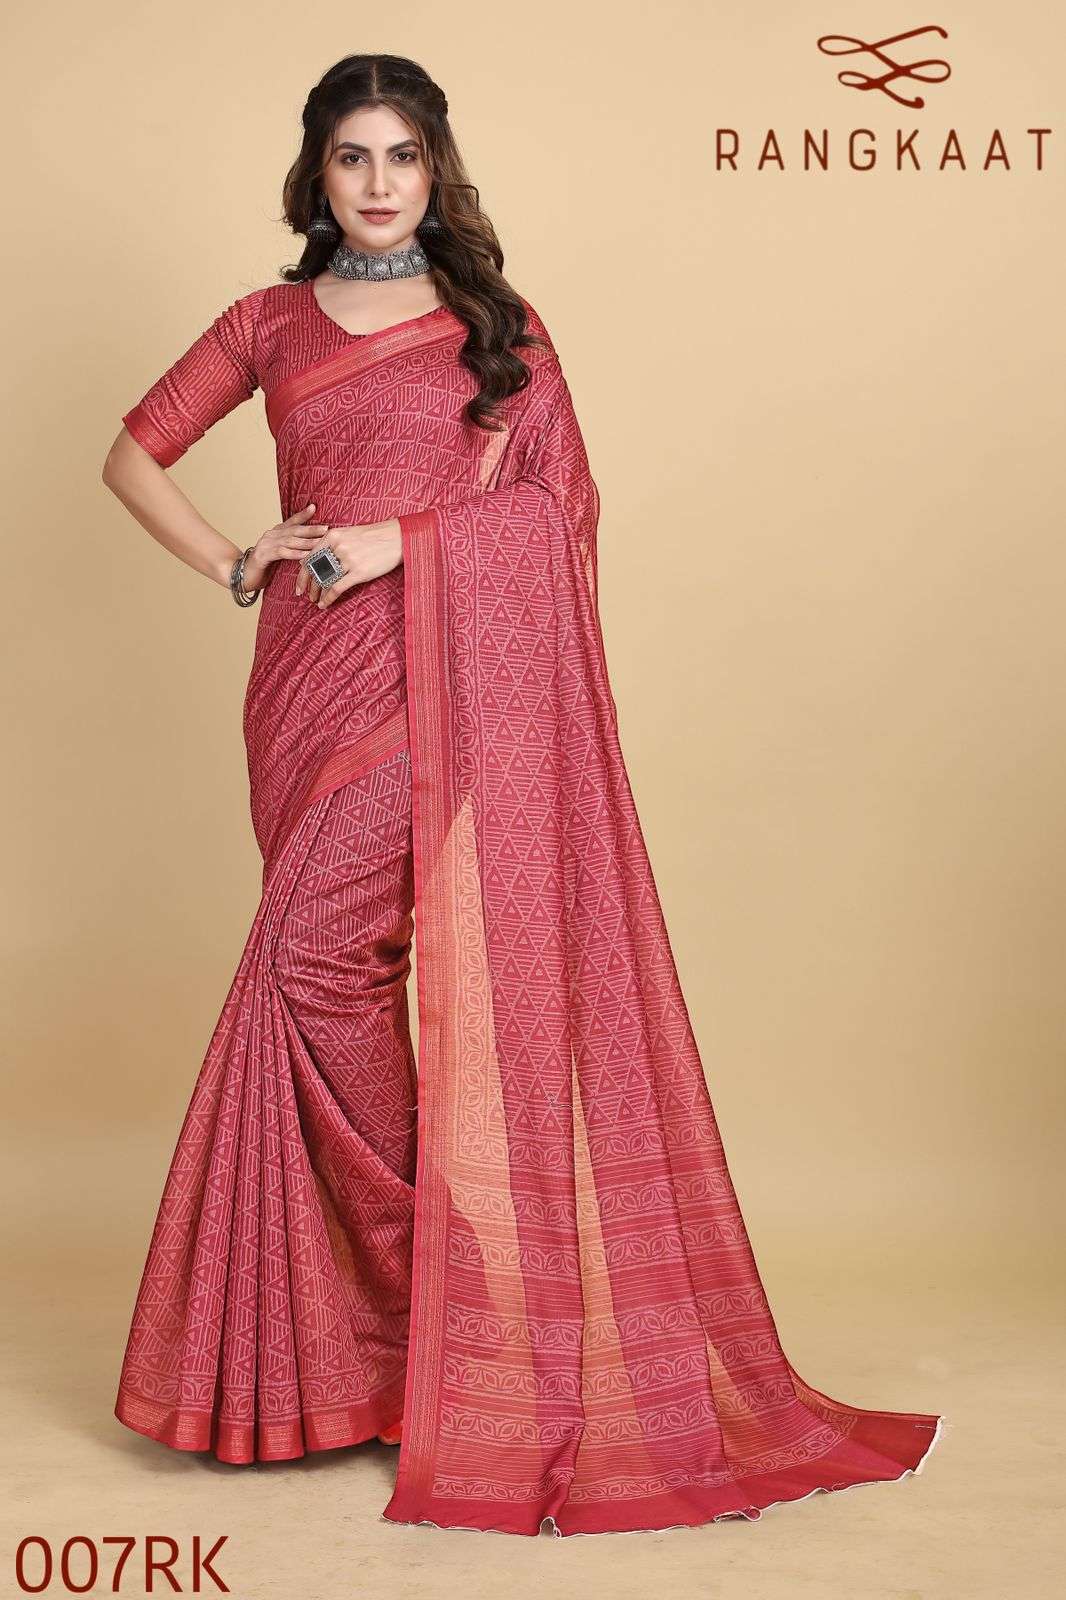 rangkaat 007-012 designer digital print women saree with blouse peice collection 